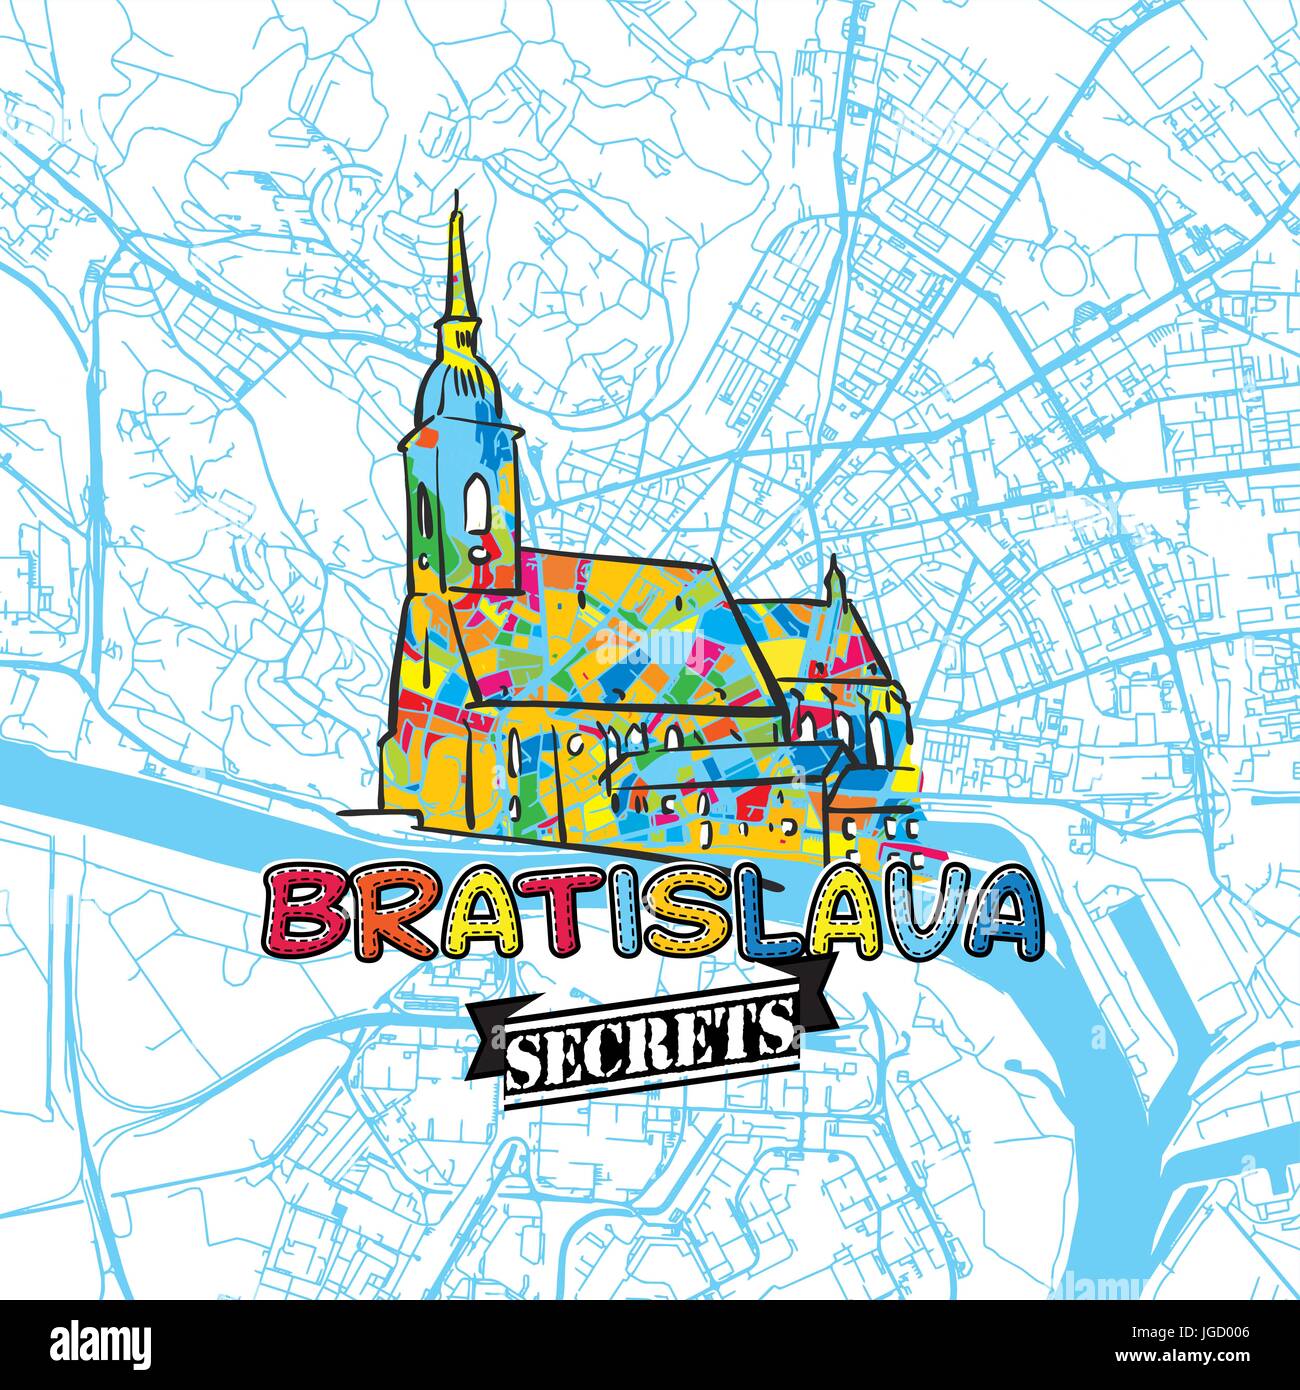 Bratislava Reisen Geheimnisse Art Map für die Zuordnung von Experten und Reiseführer. Handgemachte Stadt Logo, Typo-Abzeichen und Hand gezeichnete Vektorbild auf Top sind gruppiert Stock Vektor